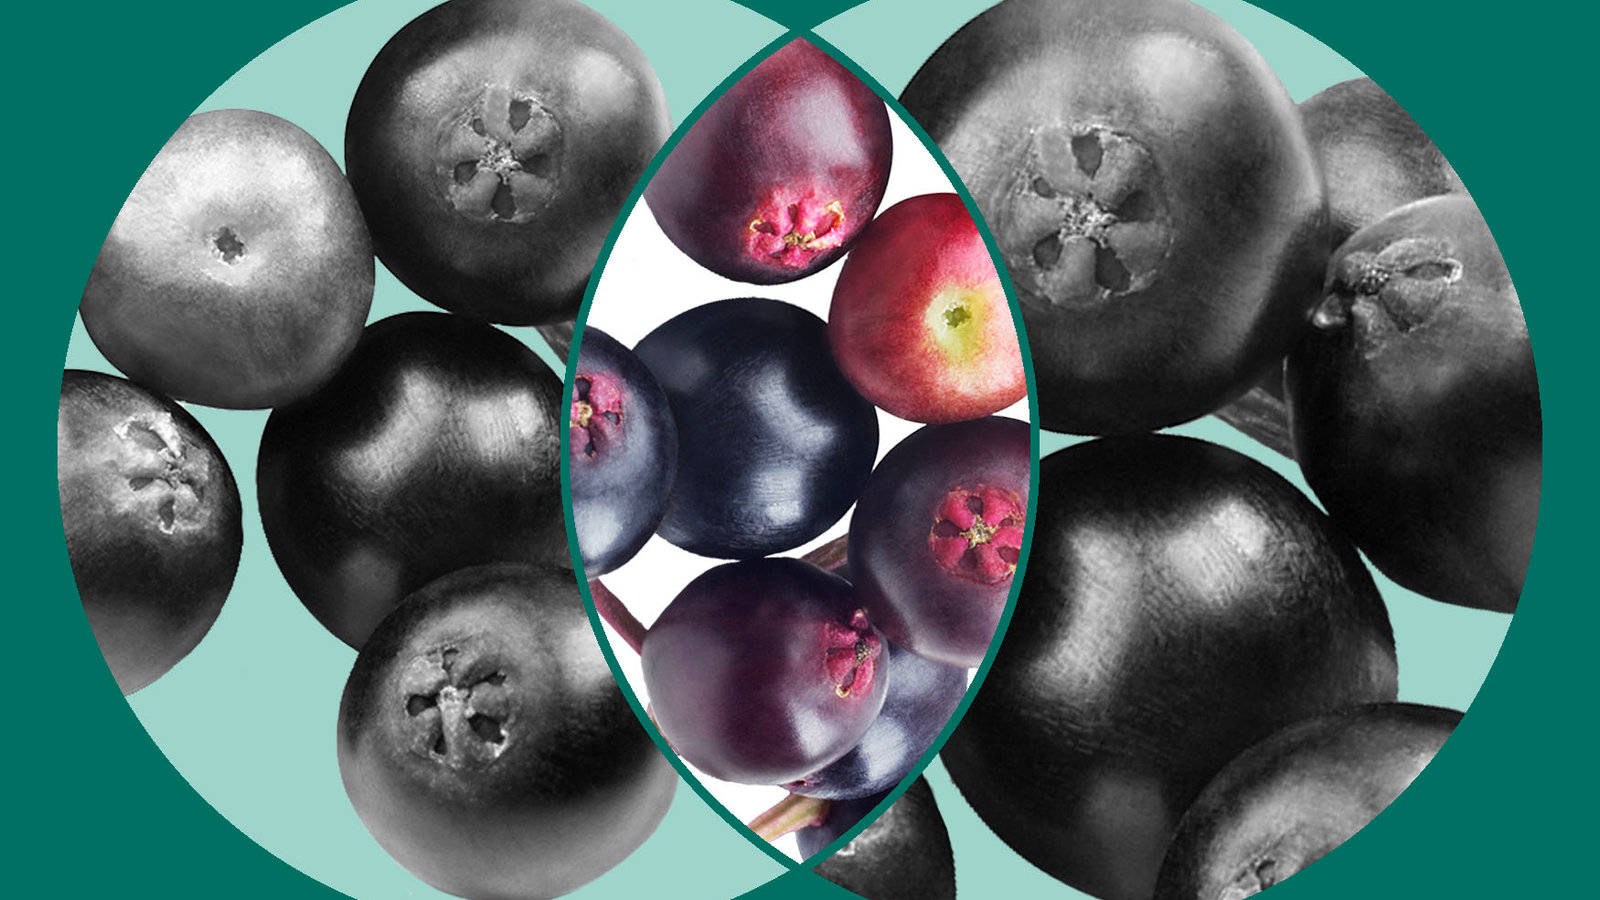 Collagede Frutas De Saúco En Blanco Y Negro. Fondo de pantalla